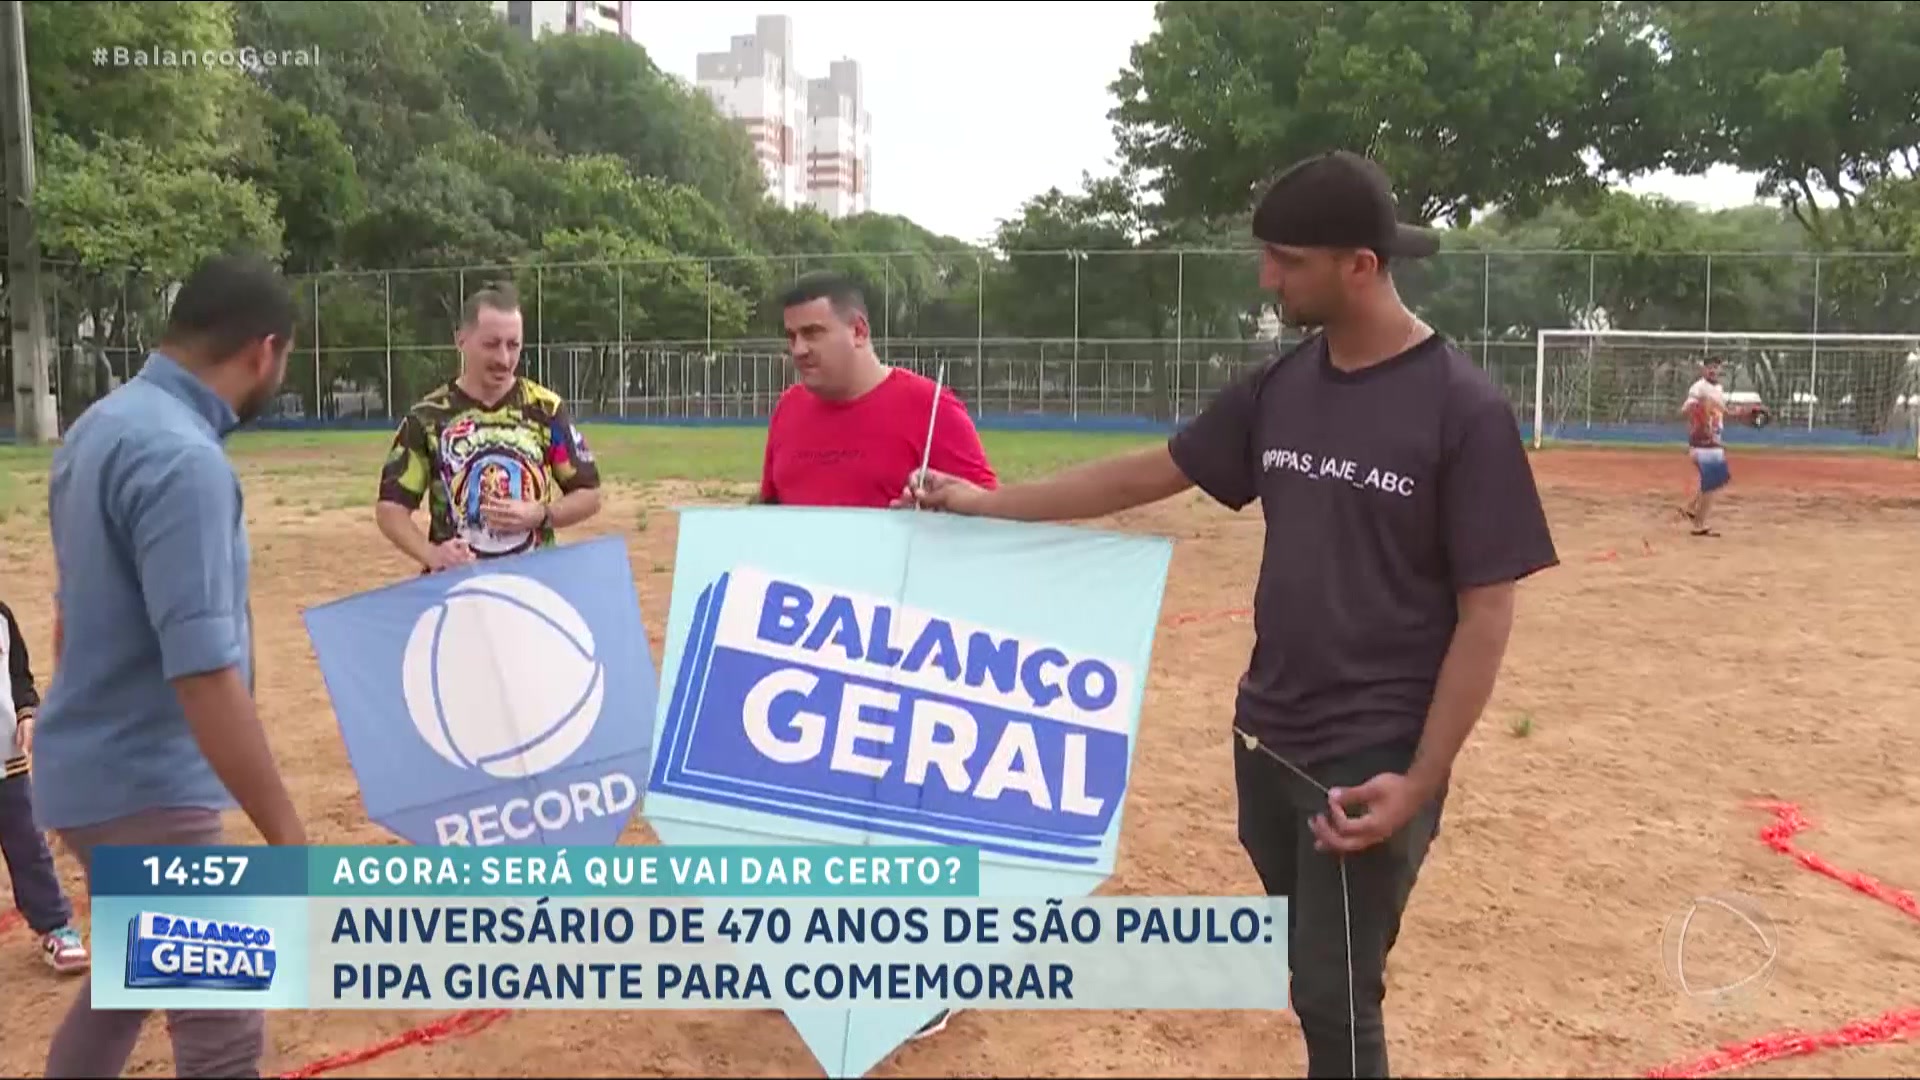 Vídeo: Pipa gigante: Balanço Geral comemora o aniversário de São Paulo nas alturas